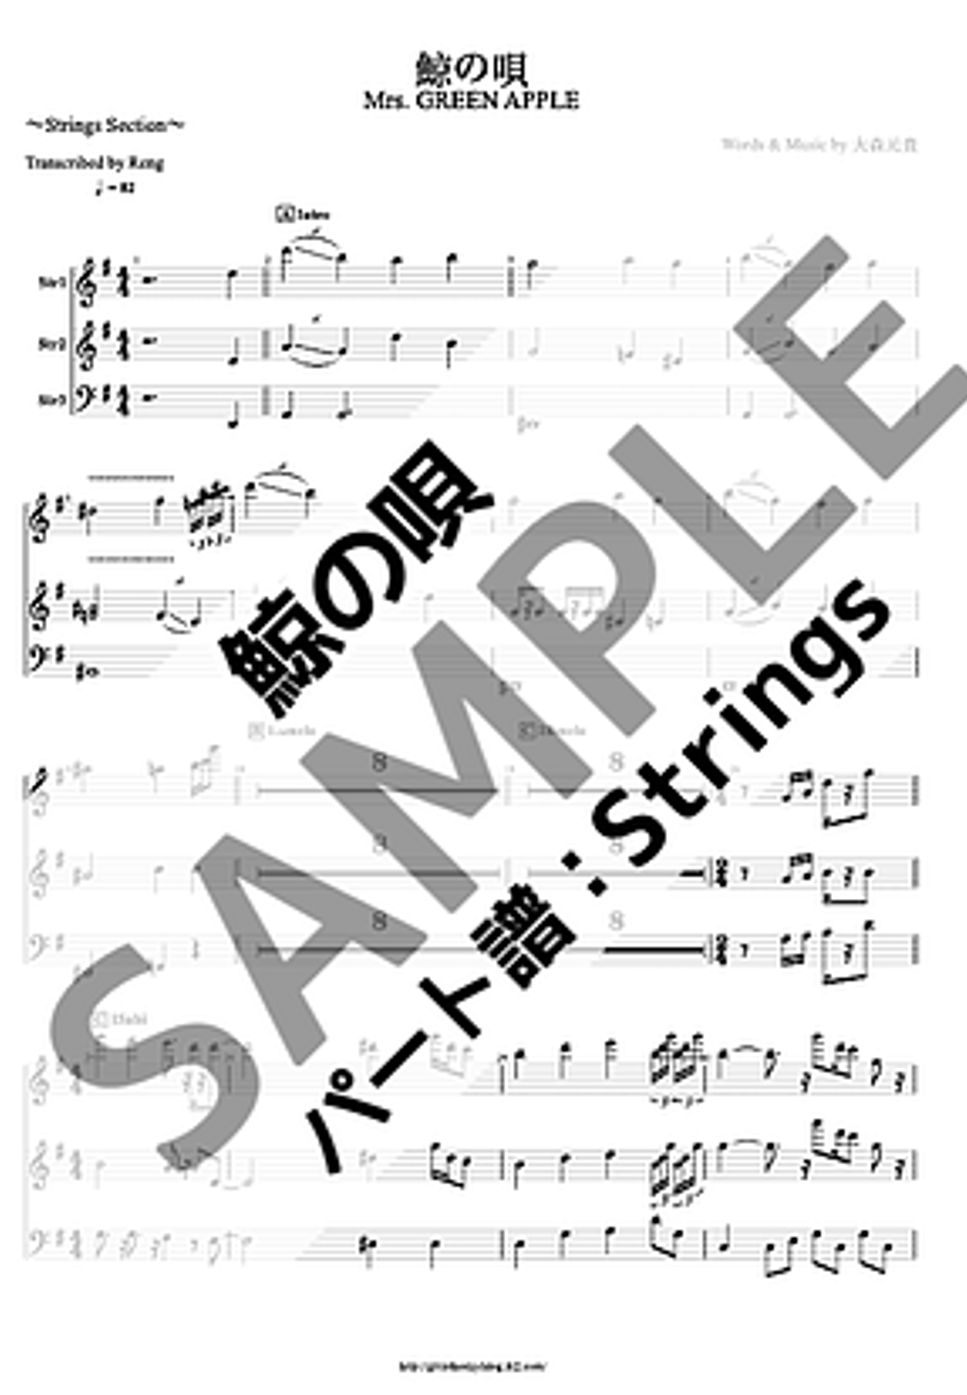 Mrs. GREEN APPLE - 鯨の唄 (Stringsセクション/ミセスグリーンアップル) by Reng